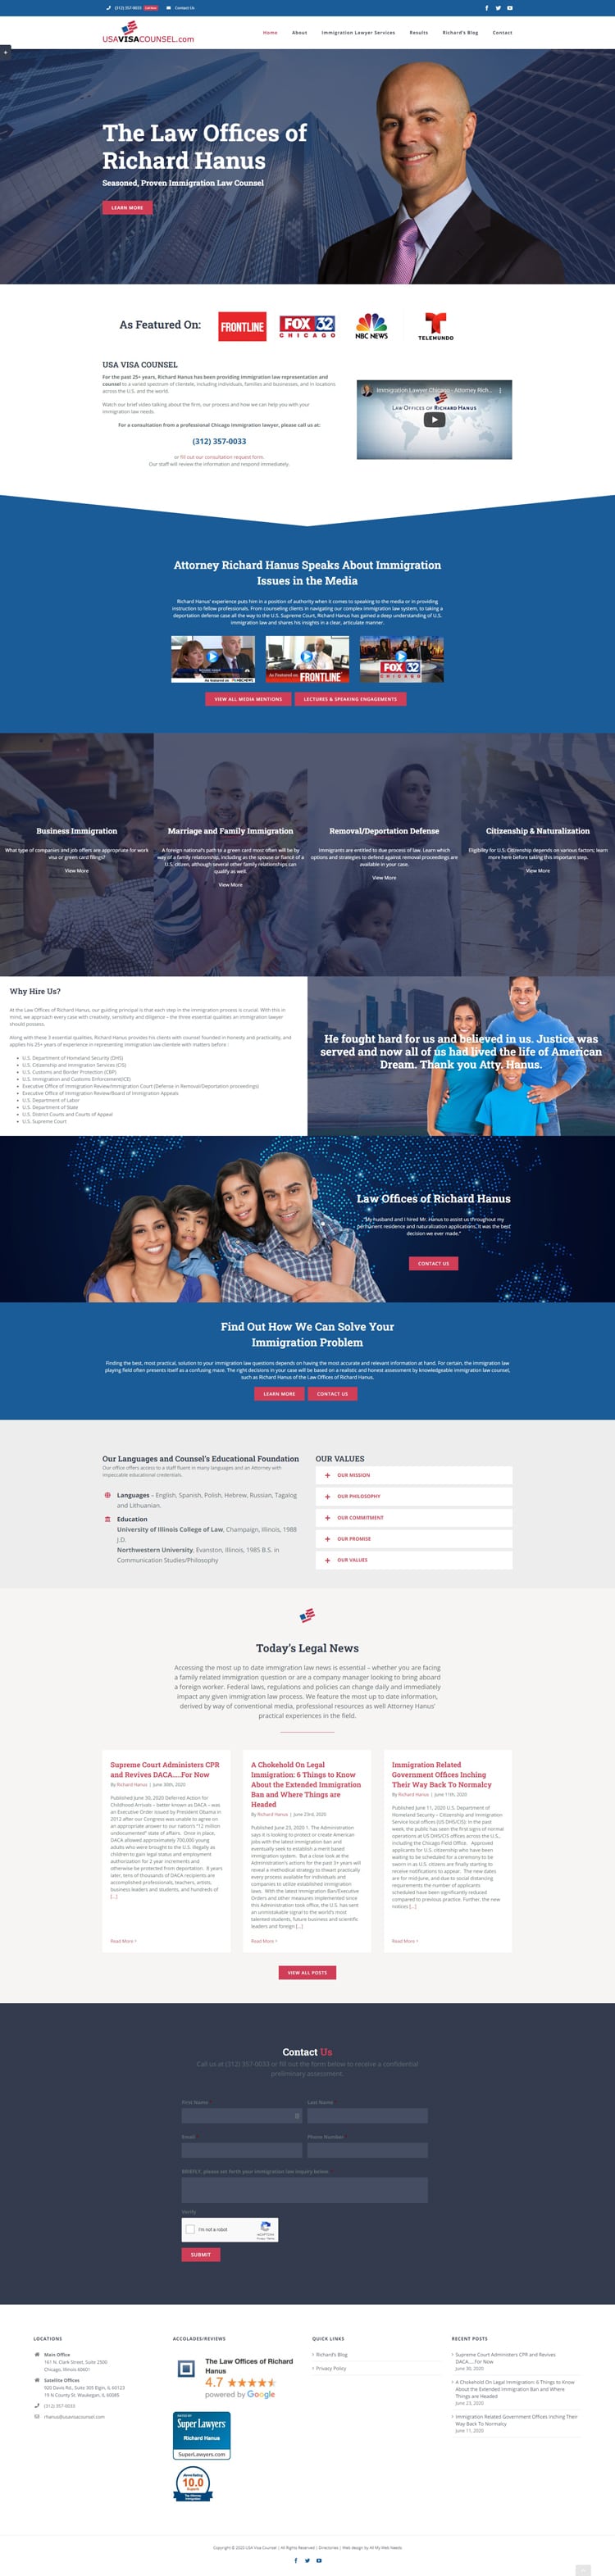 Web design full screen shot for USA Visa Counsel